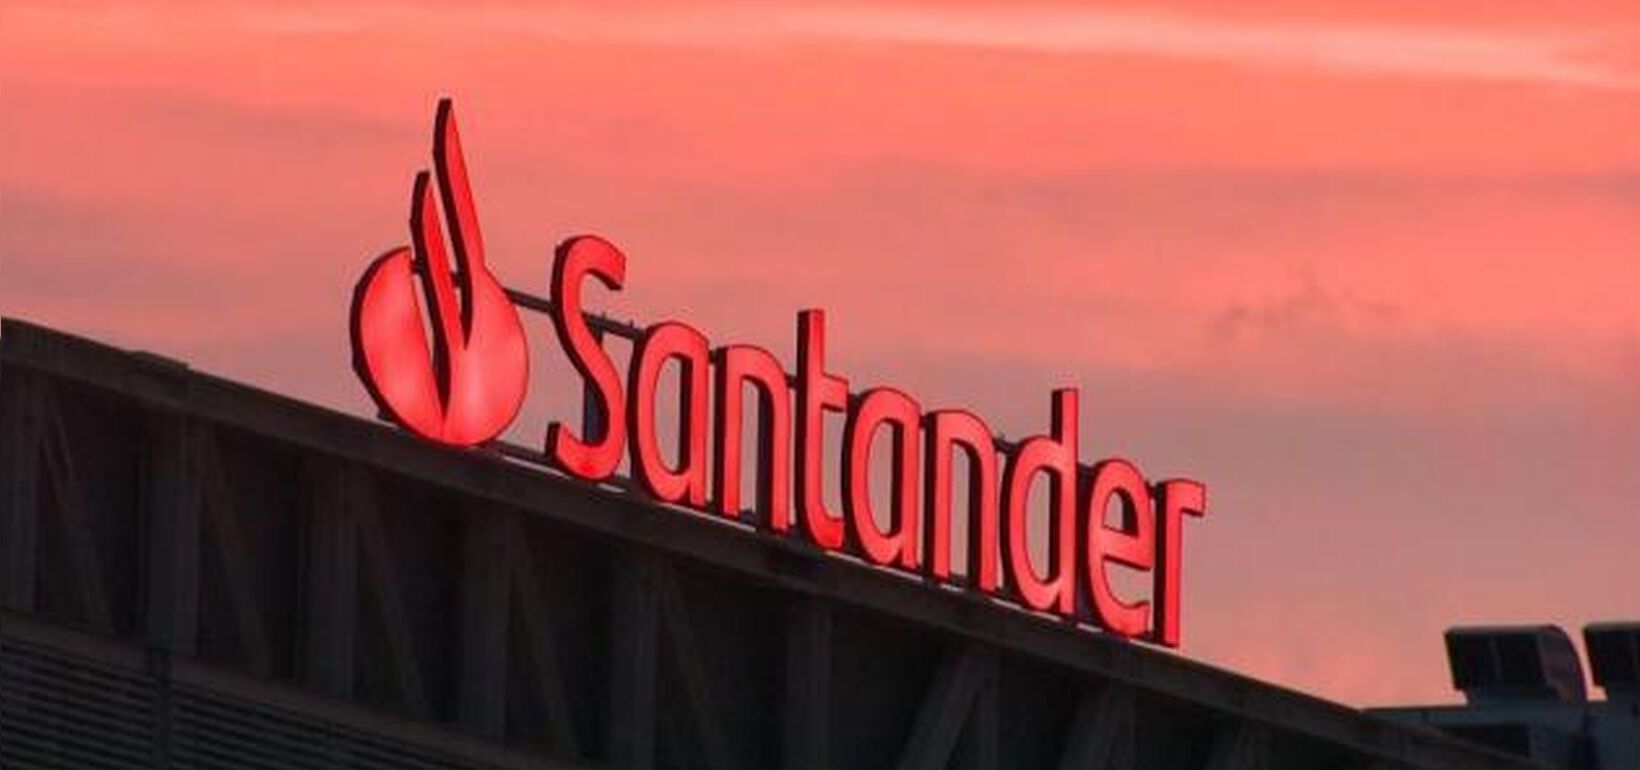 Calendario del dividendo en acciones de Banco Santander